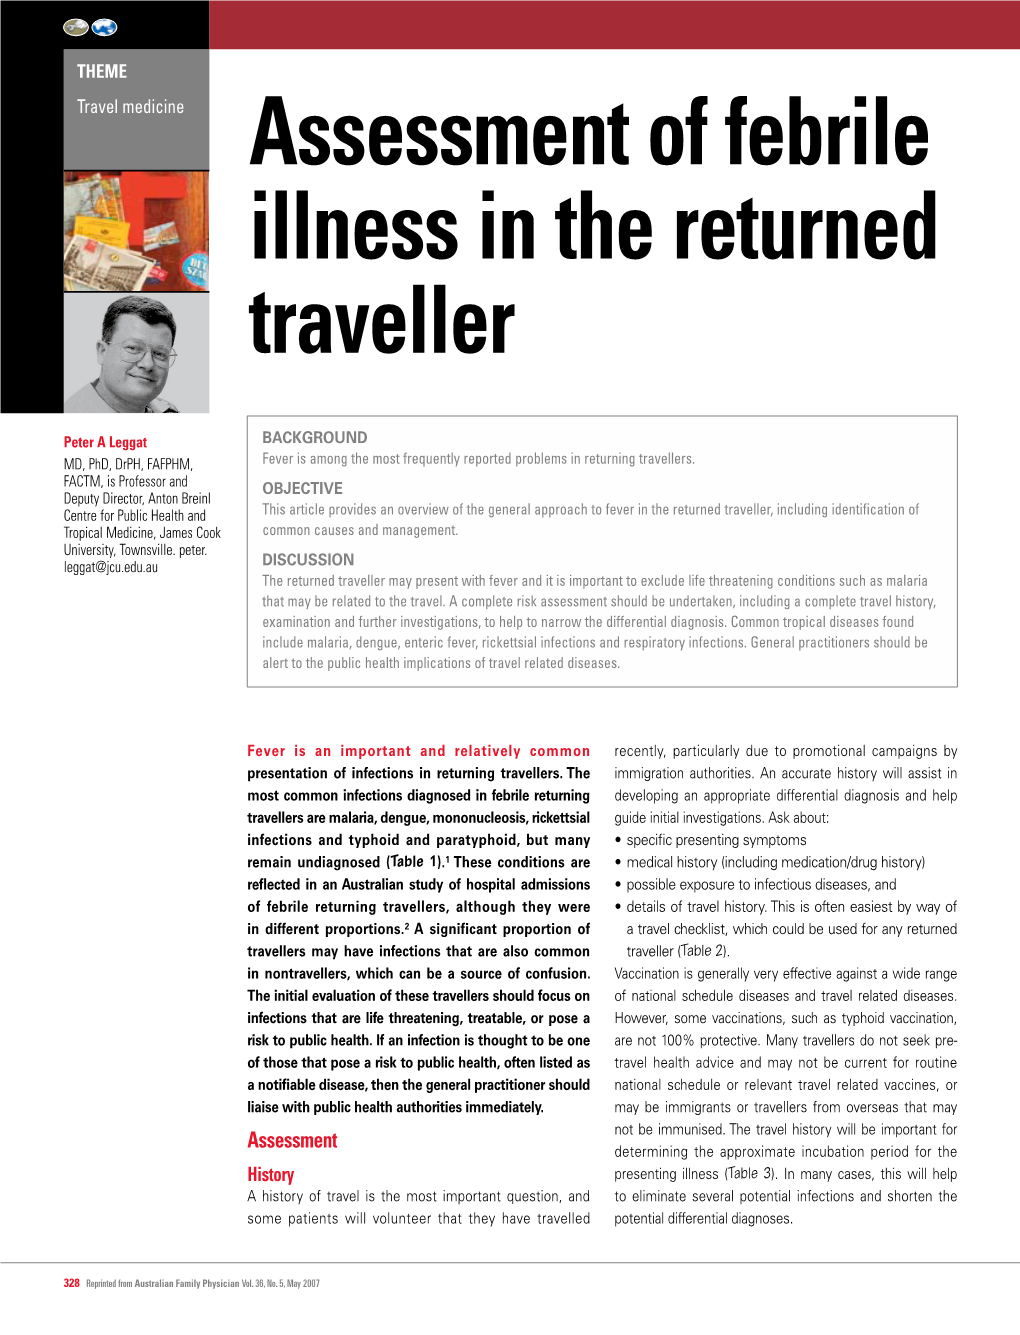 Assessment of Febrile Illness in the Returned Traveller